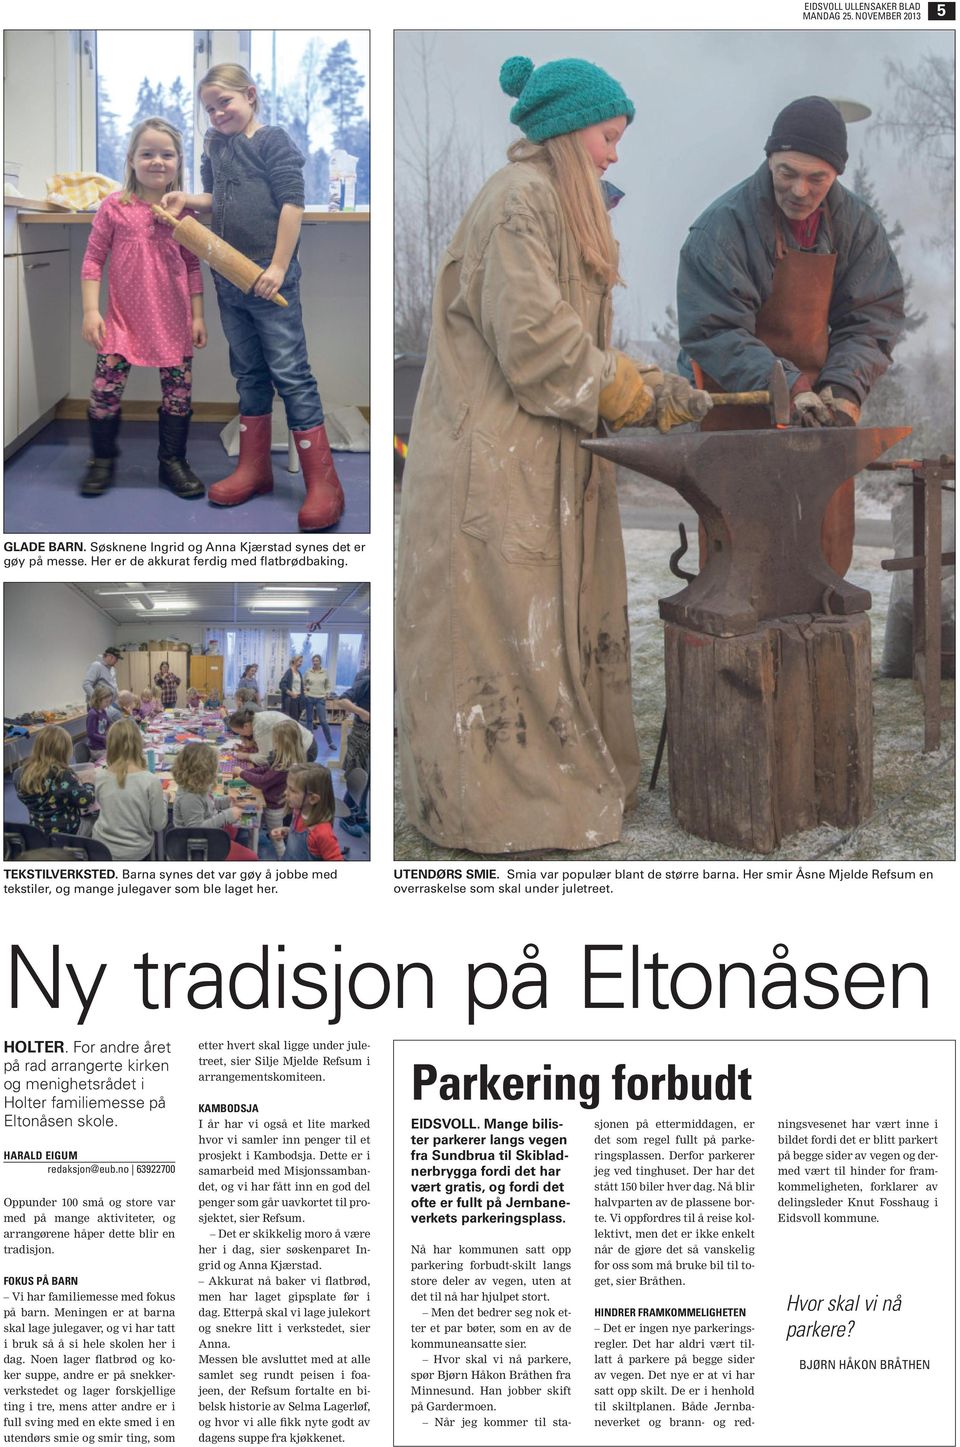 Her smir Åsne Mjelde Refsum en overraskelse som skal under juletreet. Ny tradisjon på Eltonåsen HOLTER.